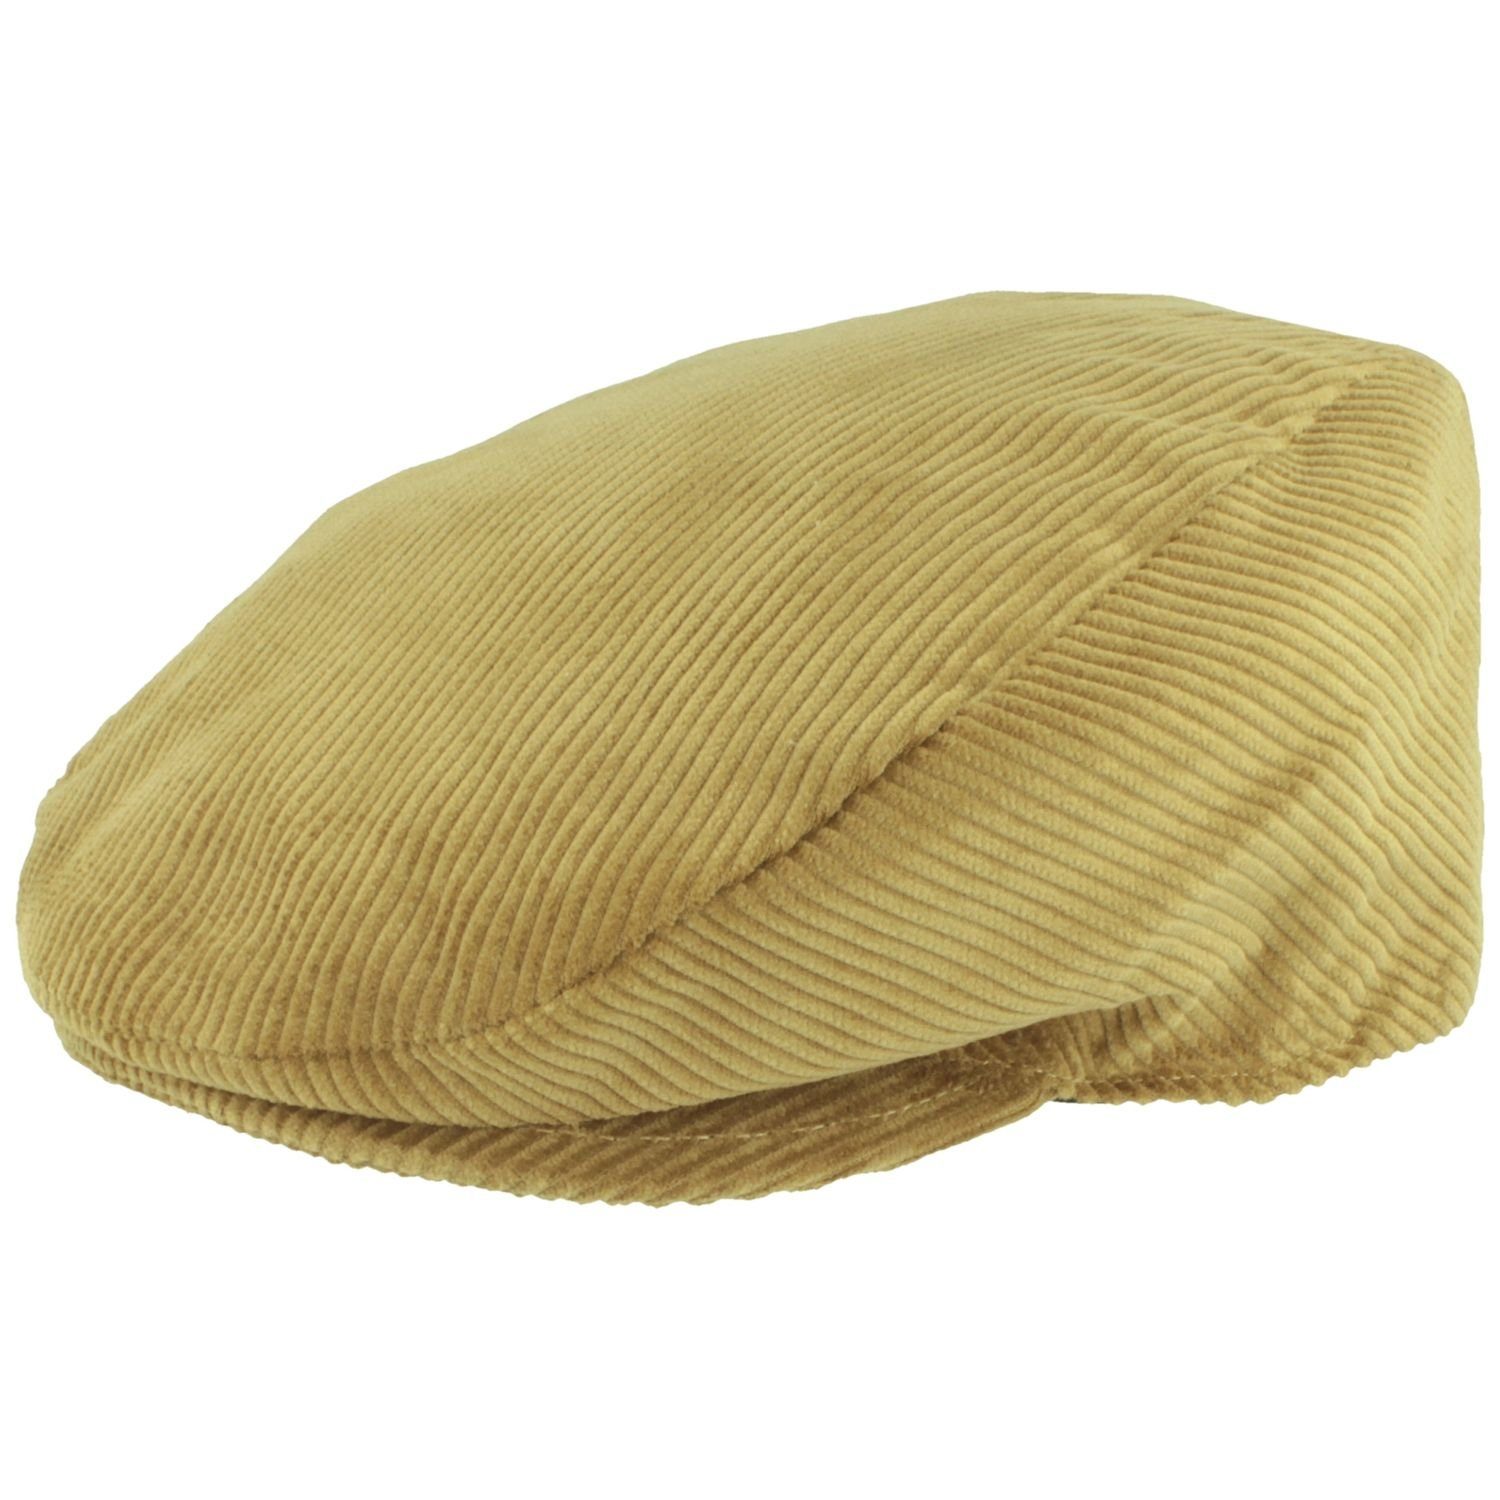 Breiter Schiebermütze Flatcap aus Baumwolle mit Cord-Streifen camel